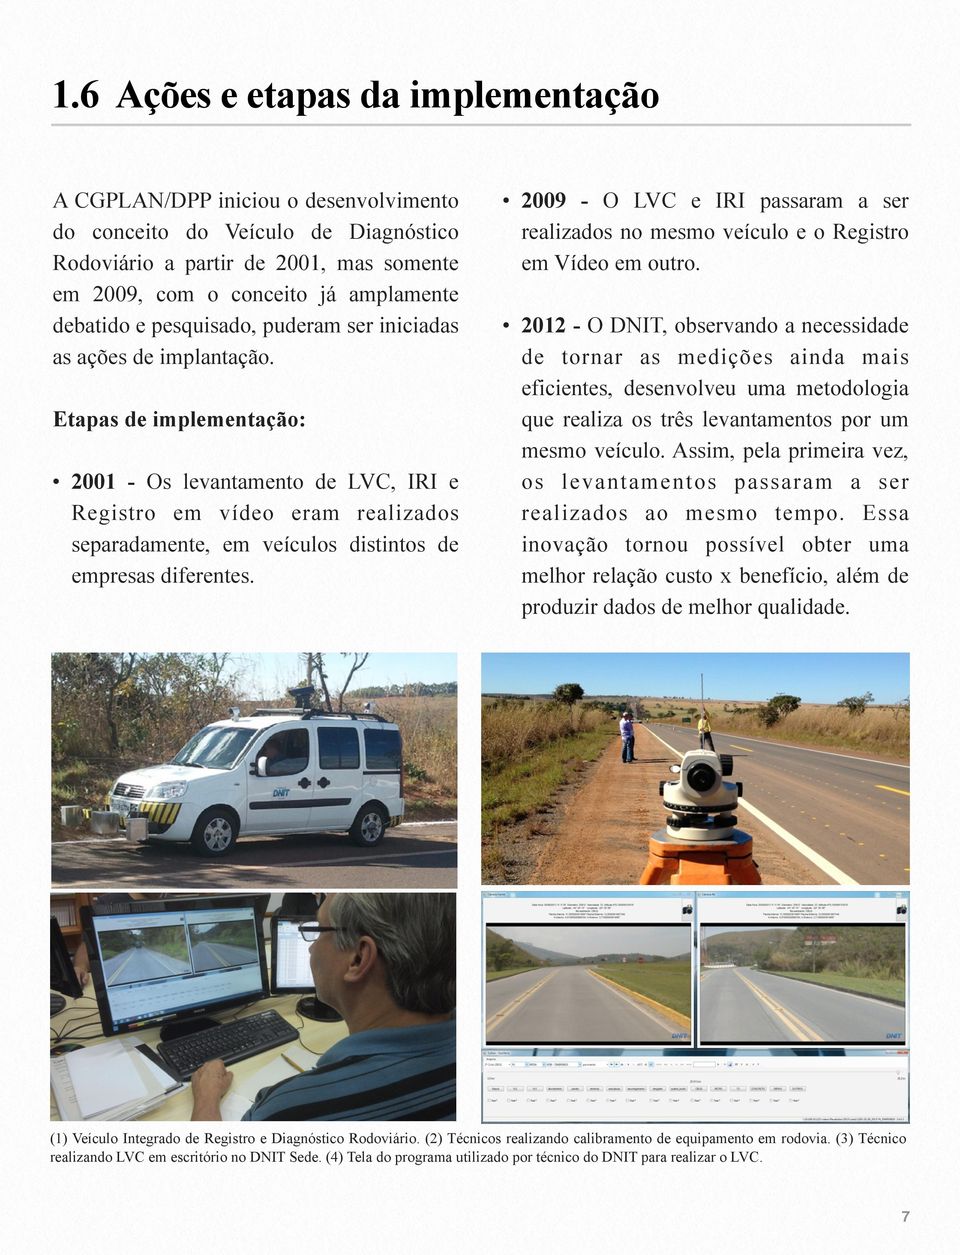 Etapas de implementação: 2001 - Os levantamento de LVC, IRI e Registro em vídeo eram realizados separadamente, em veículos distintos de empresas diferentes.